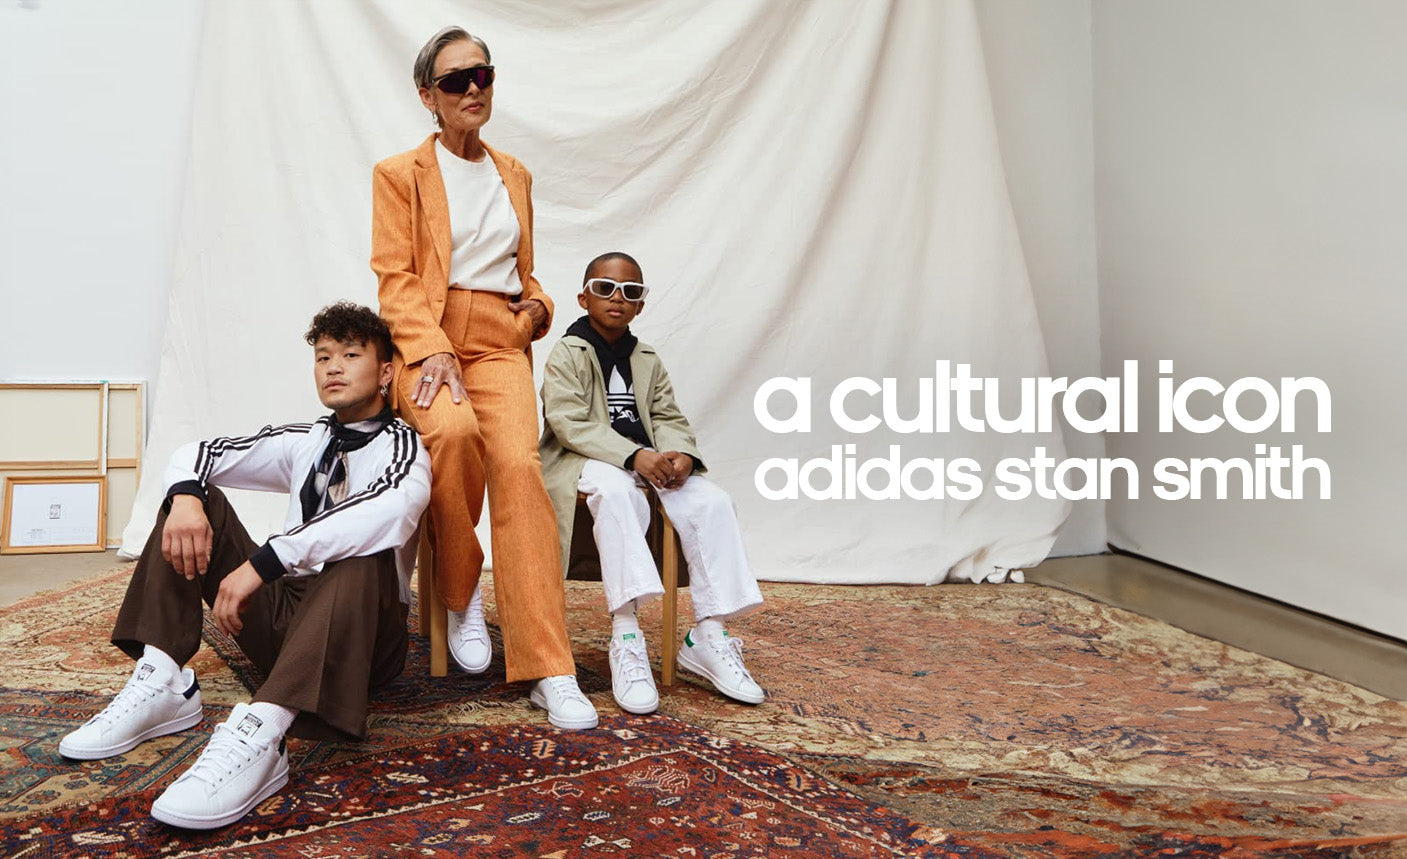 A Cultural Icon: adidas Stan Smith